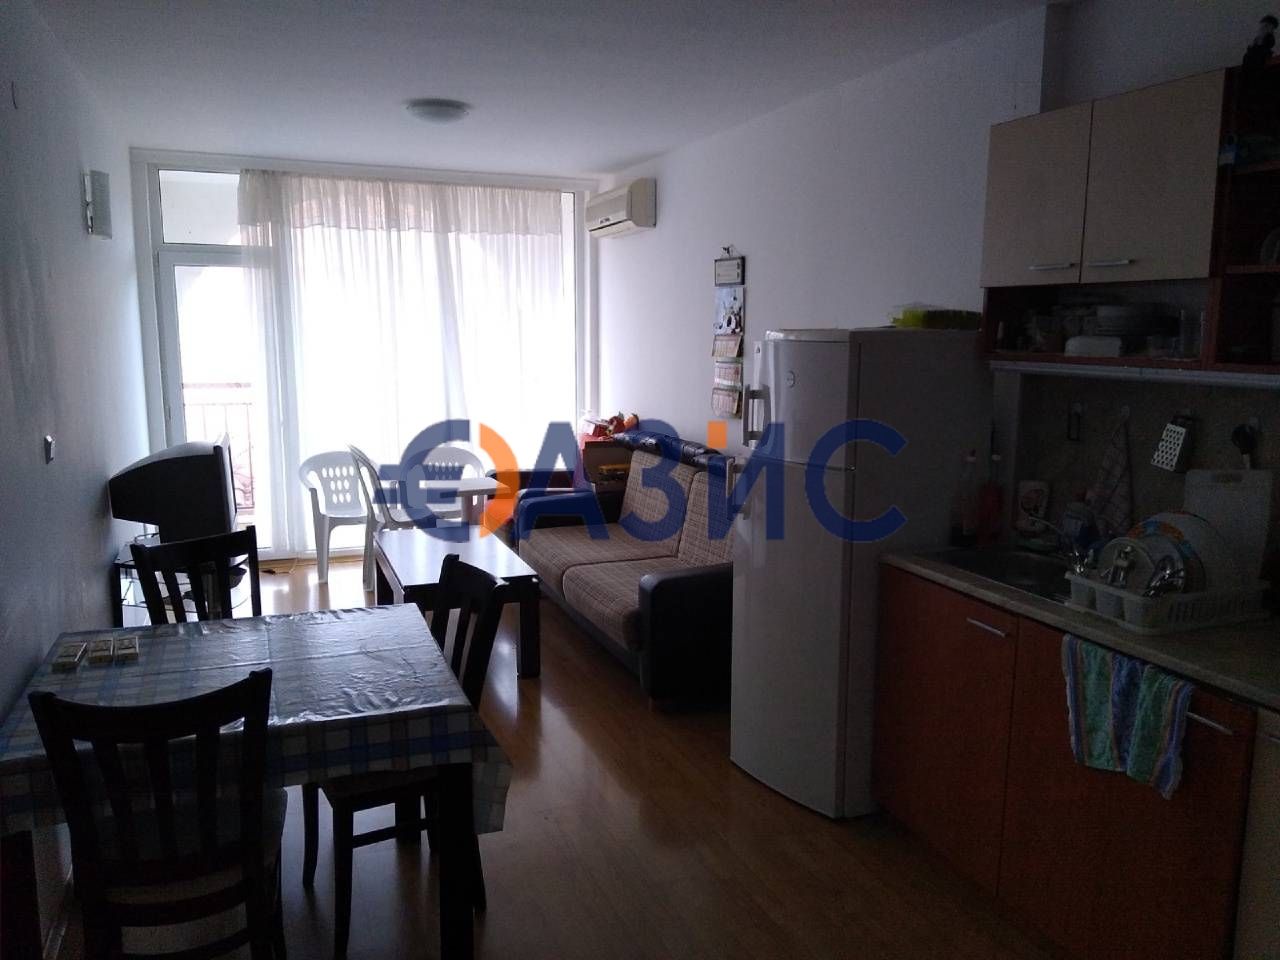 Apartment in Sozopol, Bulgaria, 92 sq.m - picture 1